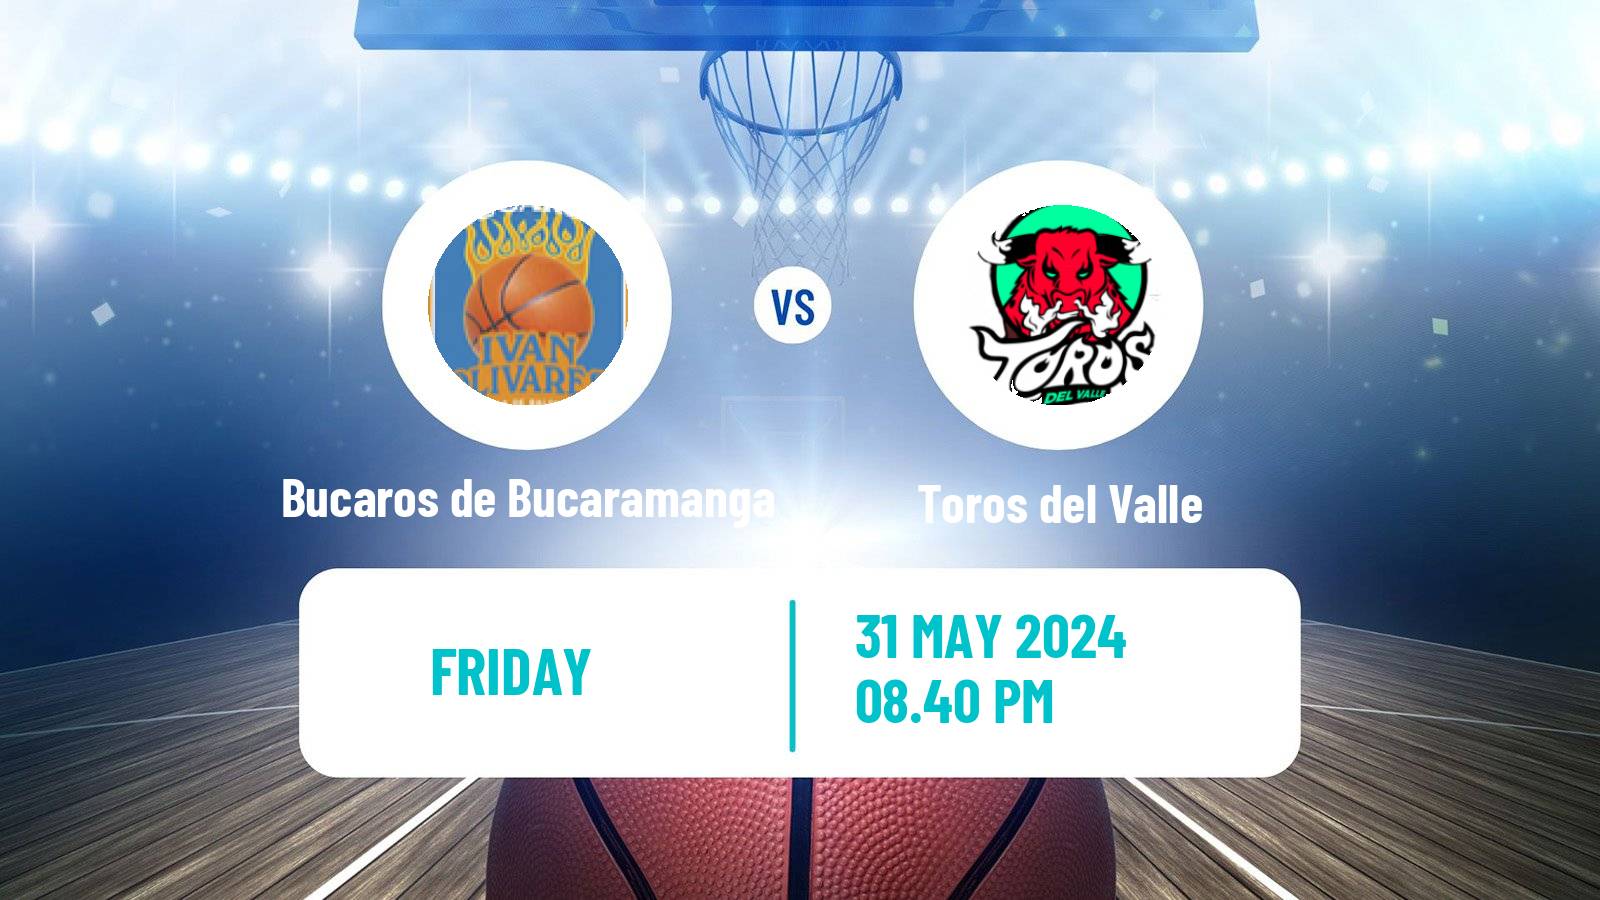 Basketball Colombian LBP Basketball Bucaros de Bucaramanga - Toros del Valle